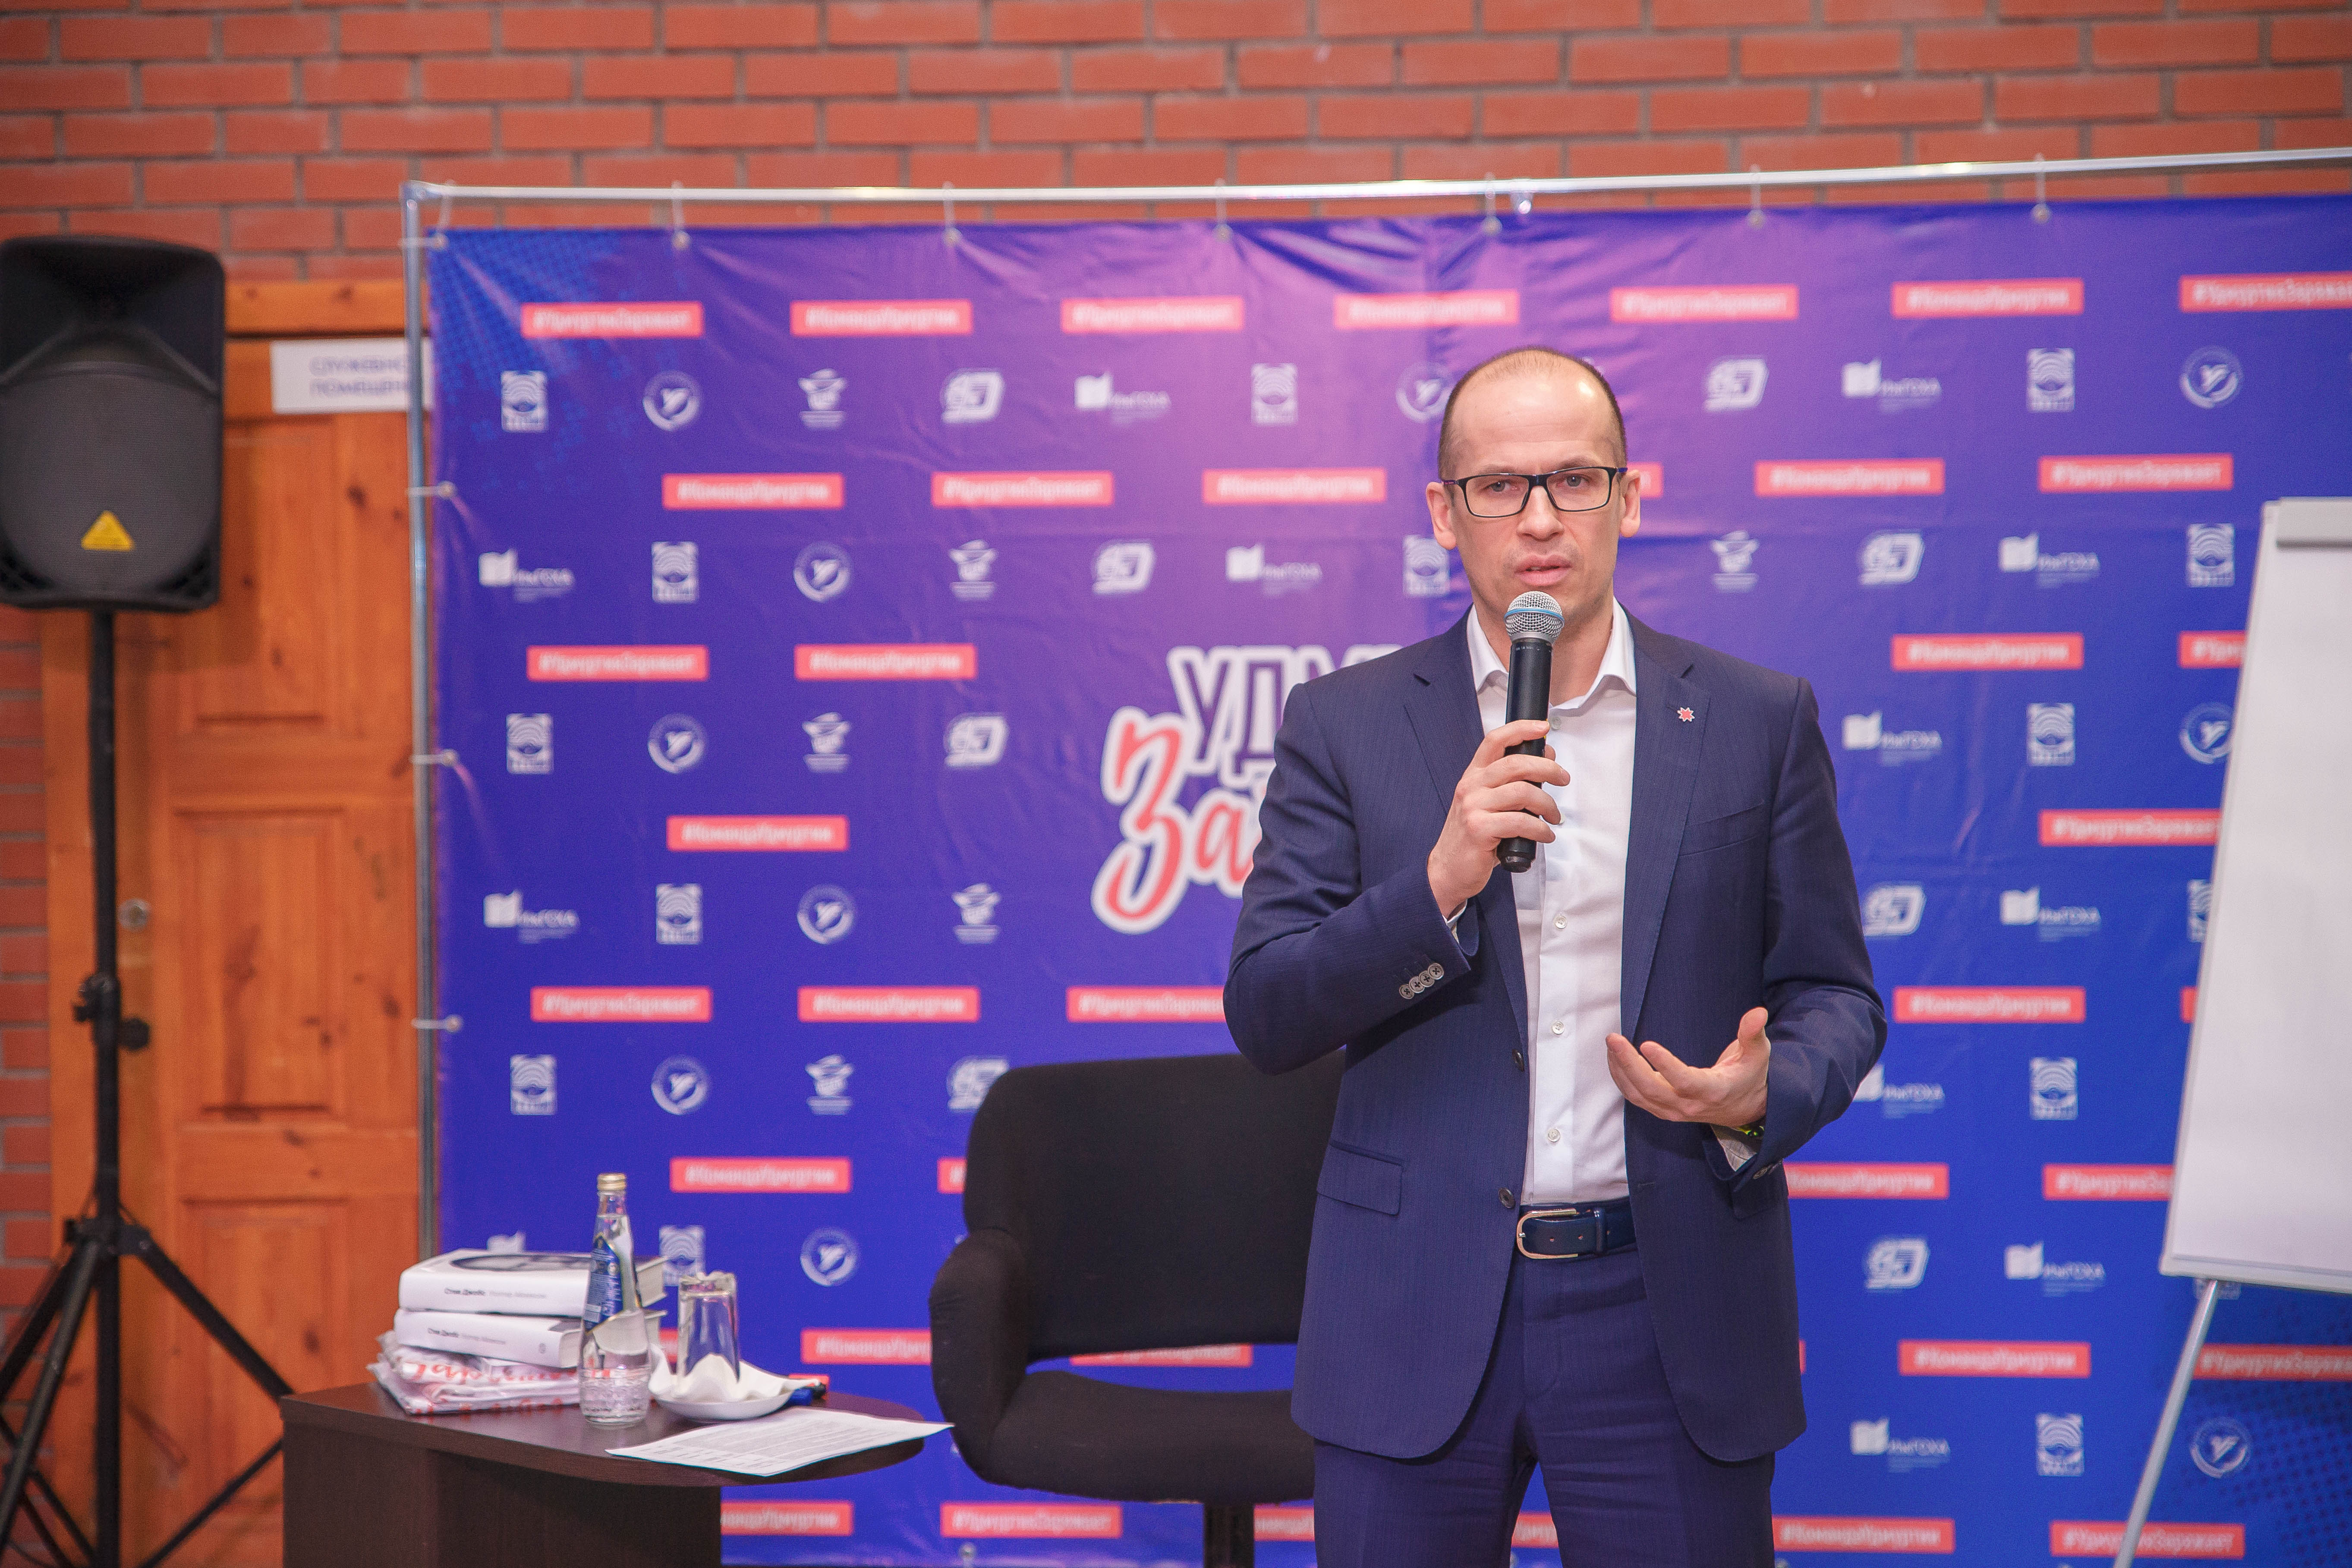 

Глава Удмуртии Александр Бречалов объяснил изменение отношения к госдолгу

